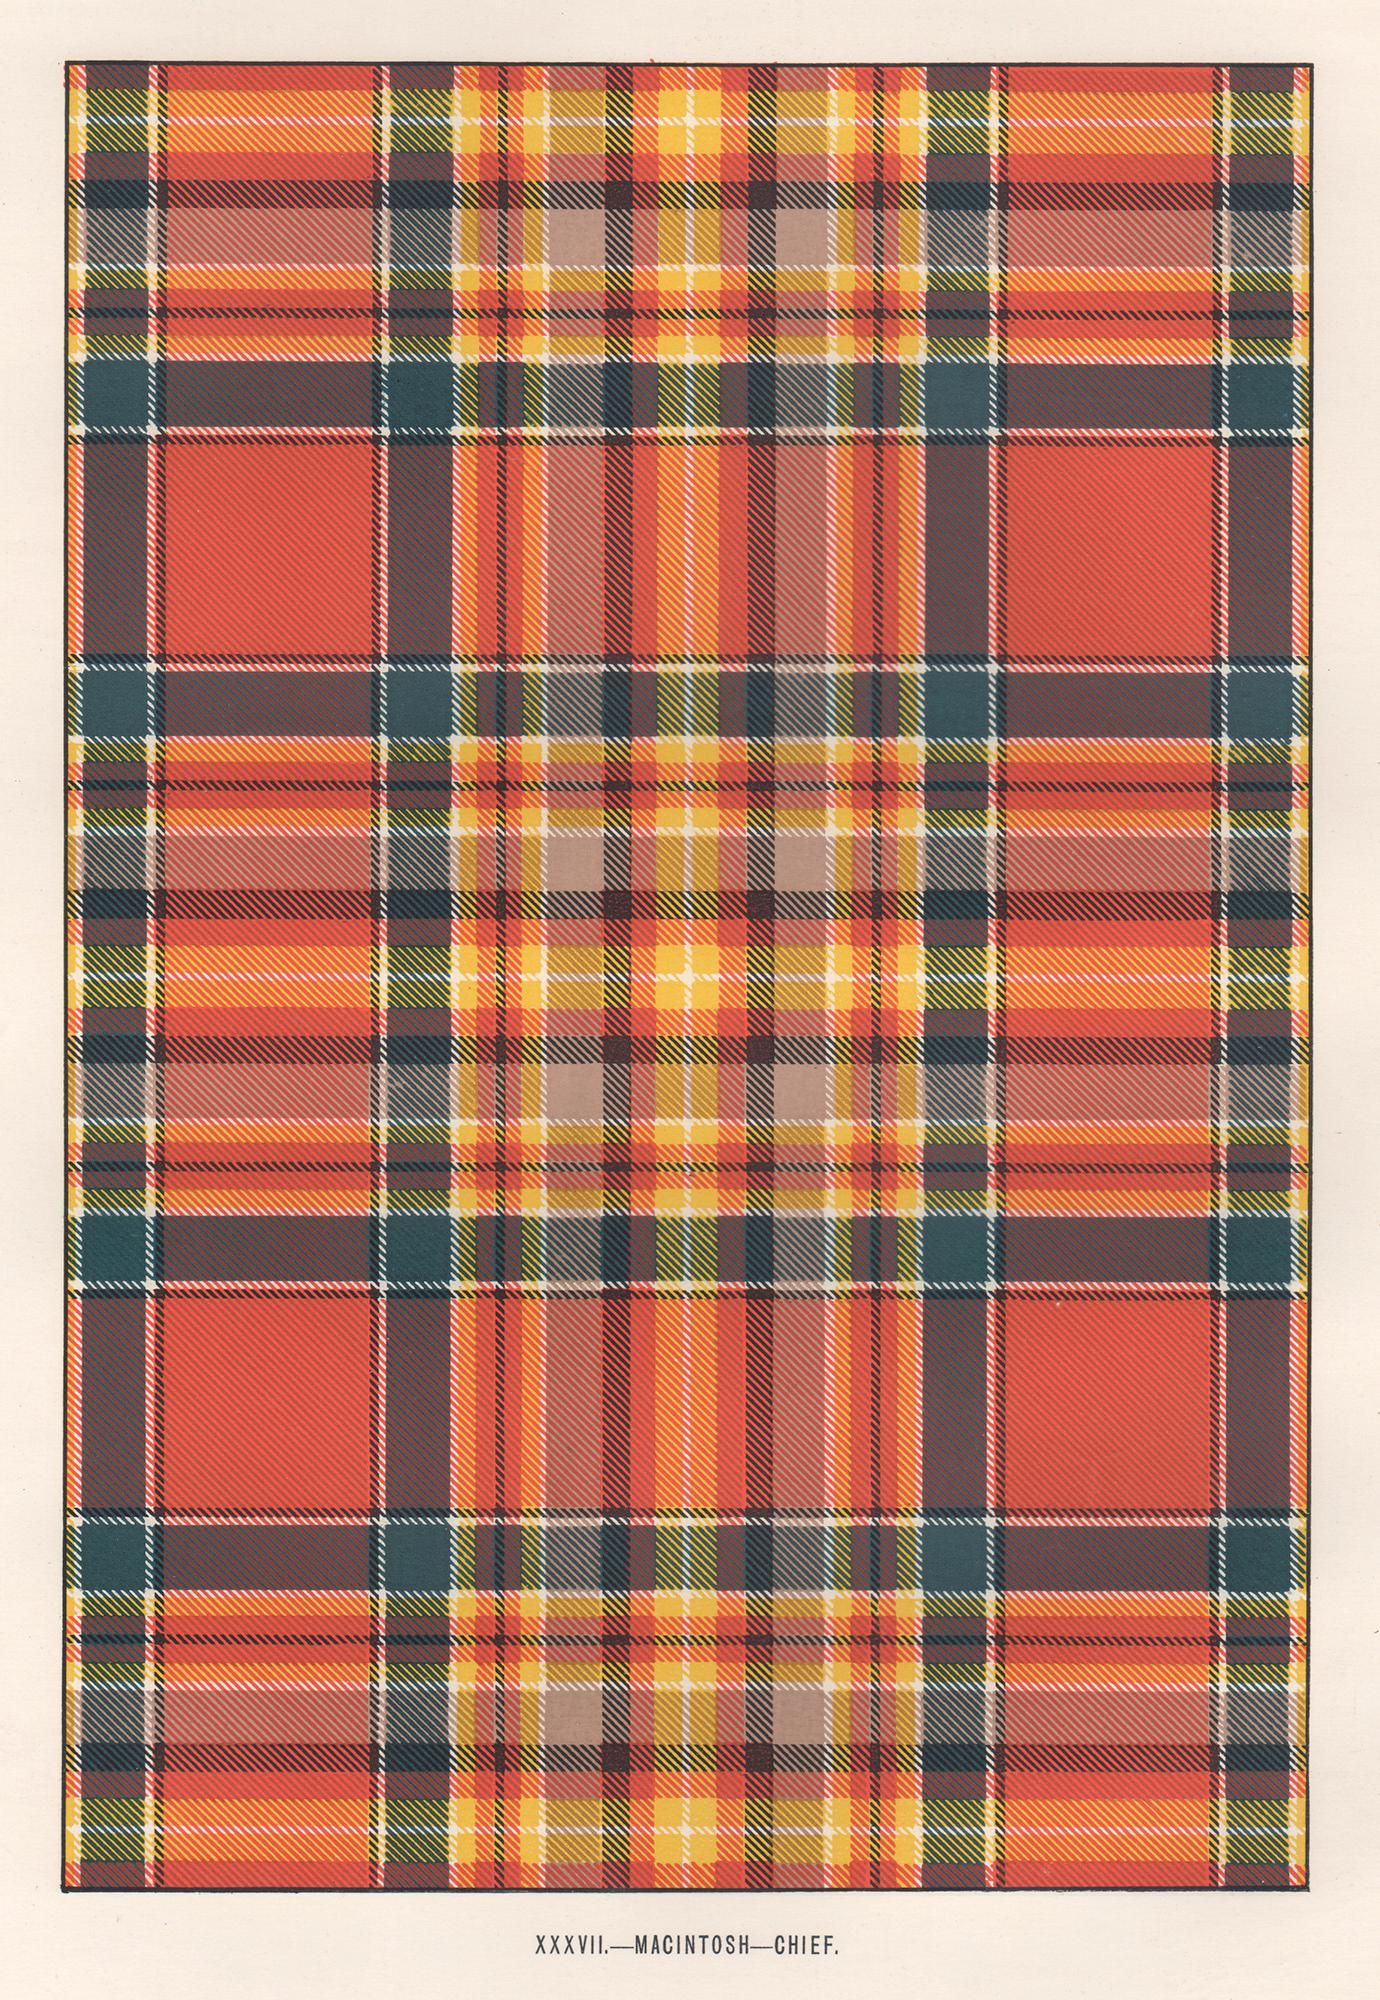 MacIntosh - Chief (Tartan), Kunstdesign-Lithographiedruck im schottischen Schottland